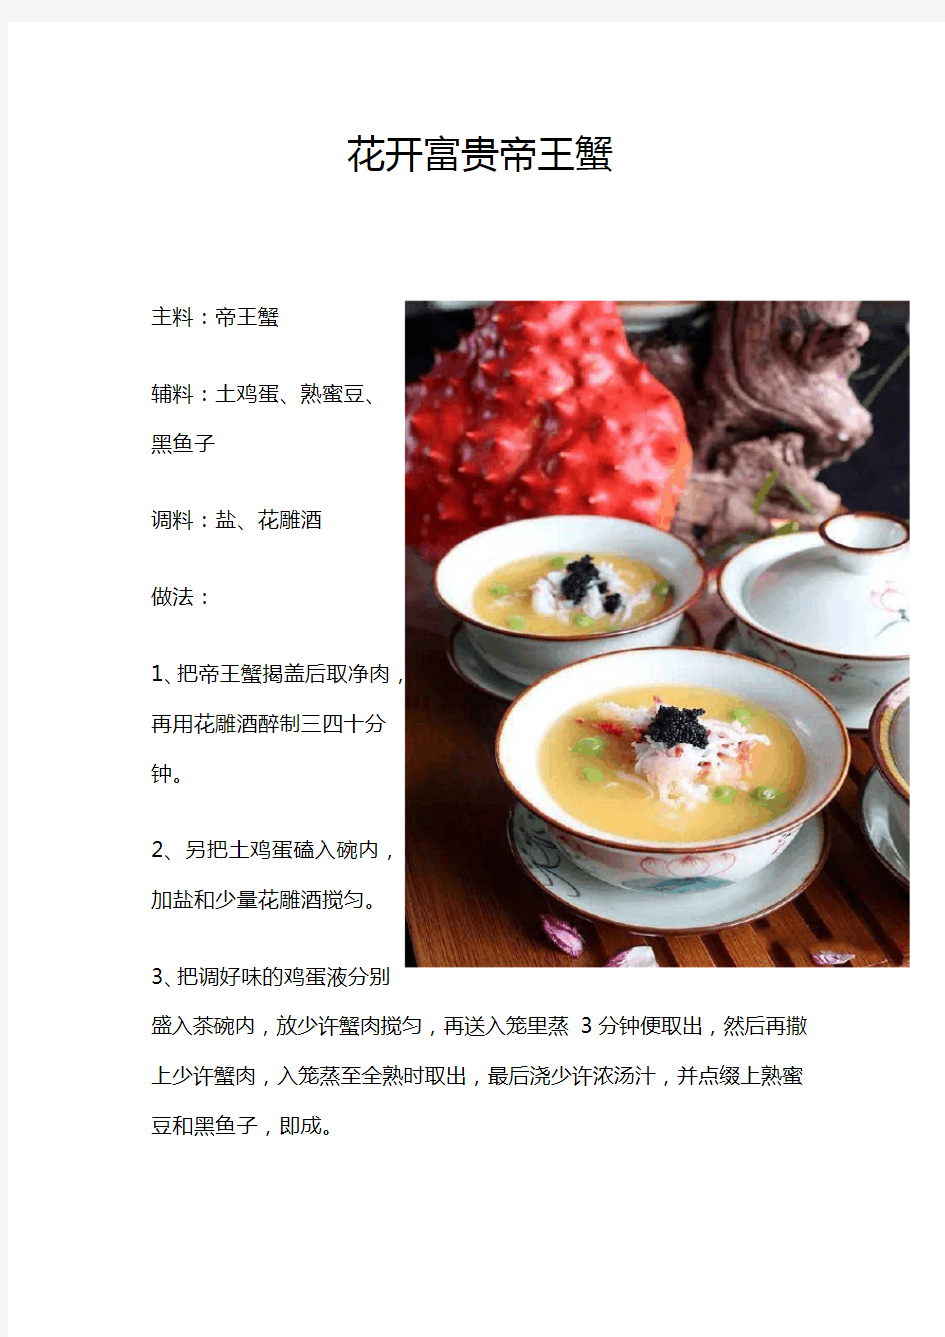 中餐创新创意菜图文教程10道(一)